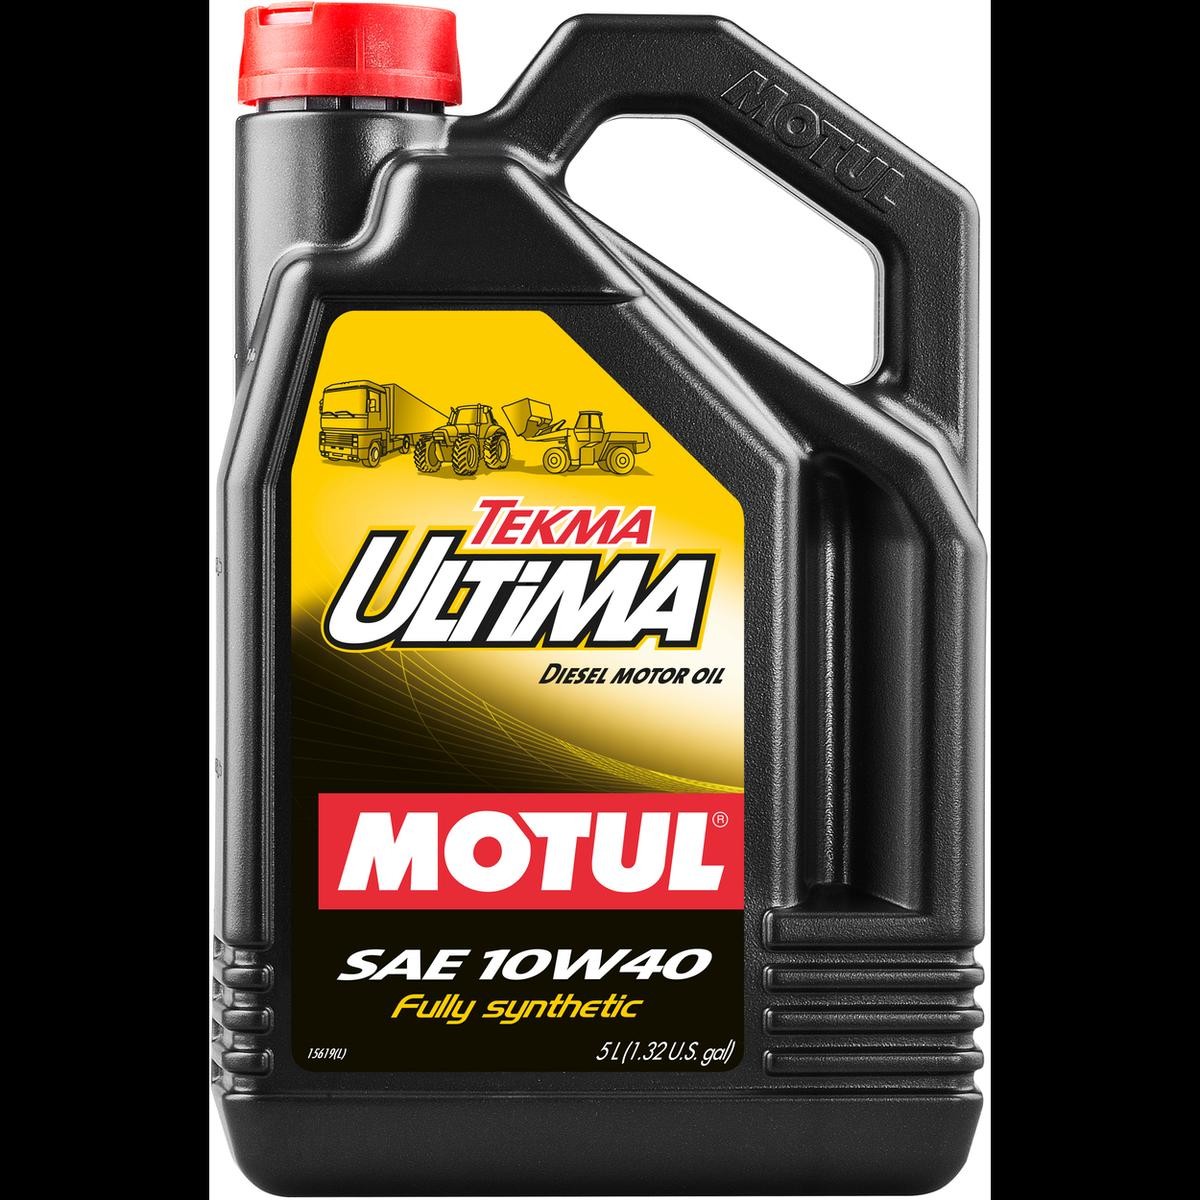 Motor oil MOTUL 10W-40, 5l, Part Synthetic Oil longlife 106455